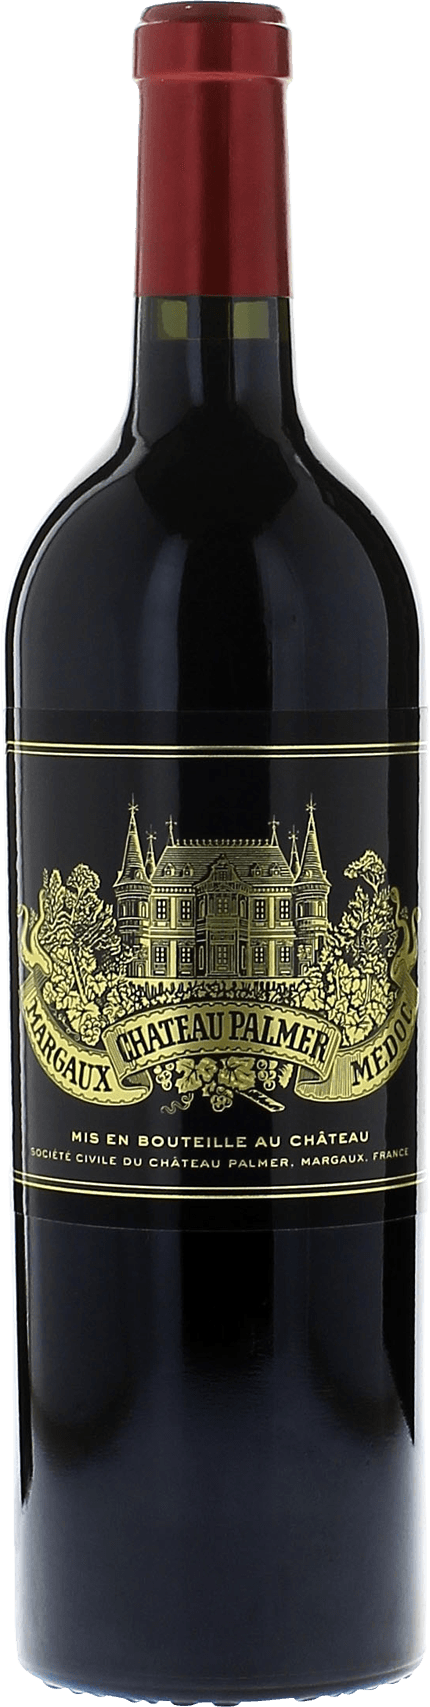 Palmer 2014 3me Grand cru class Margaux, Bordeaux rouge